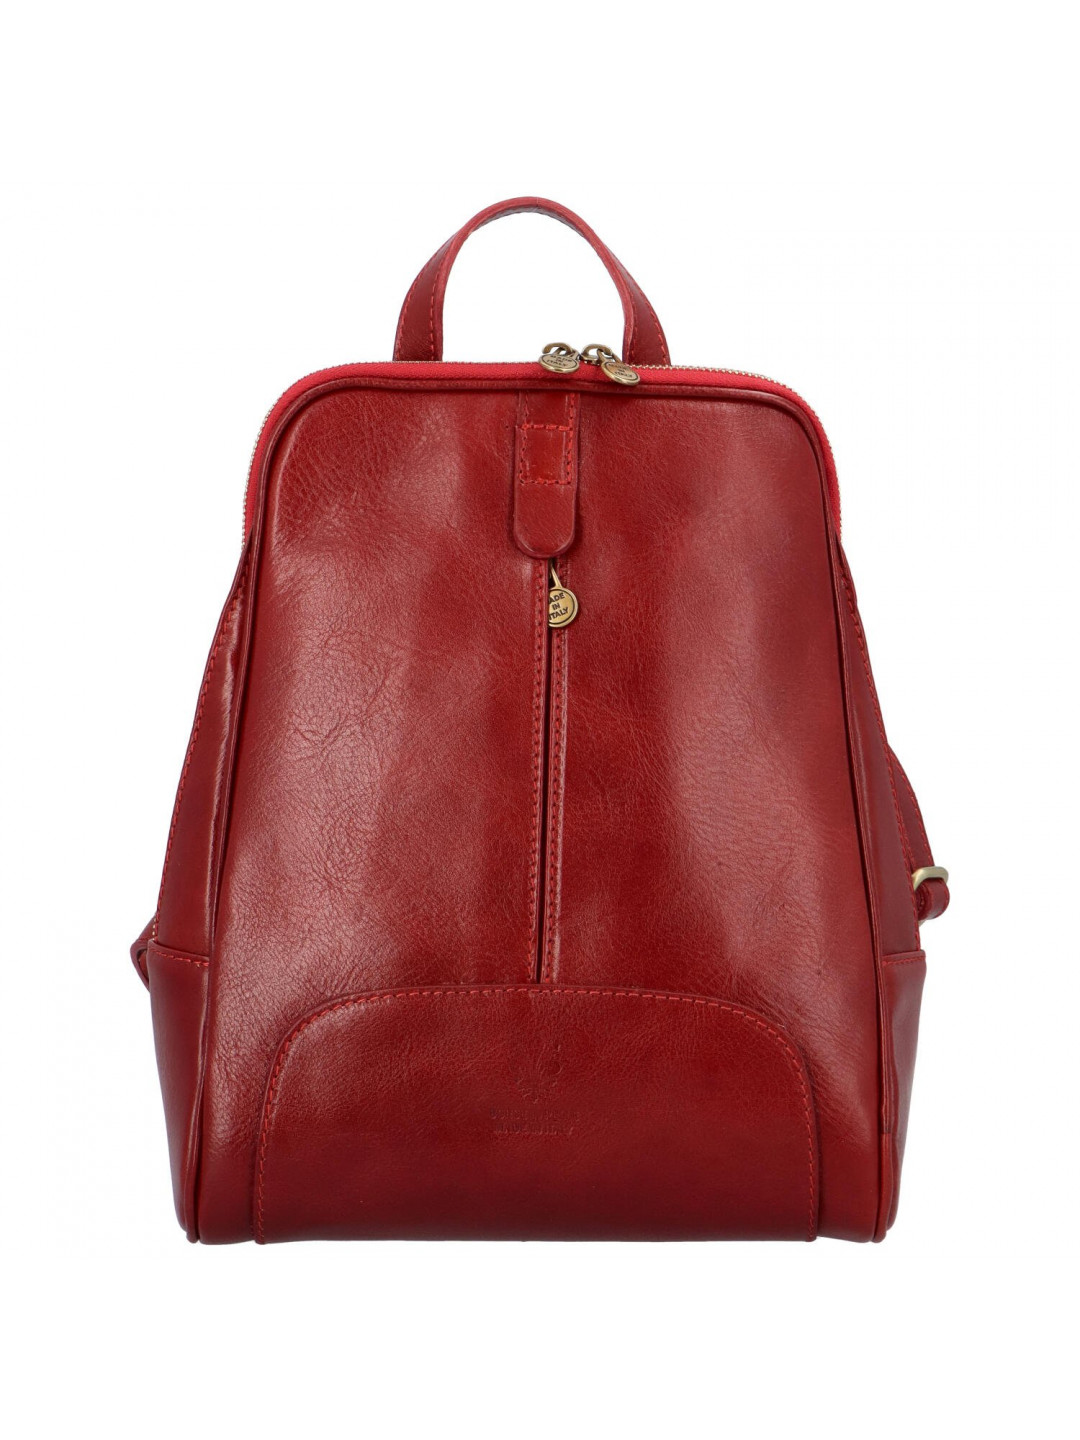 Dámský kožený batoh červený – Delami Vera Pelle Liviena